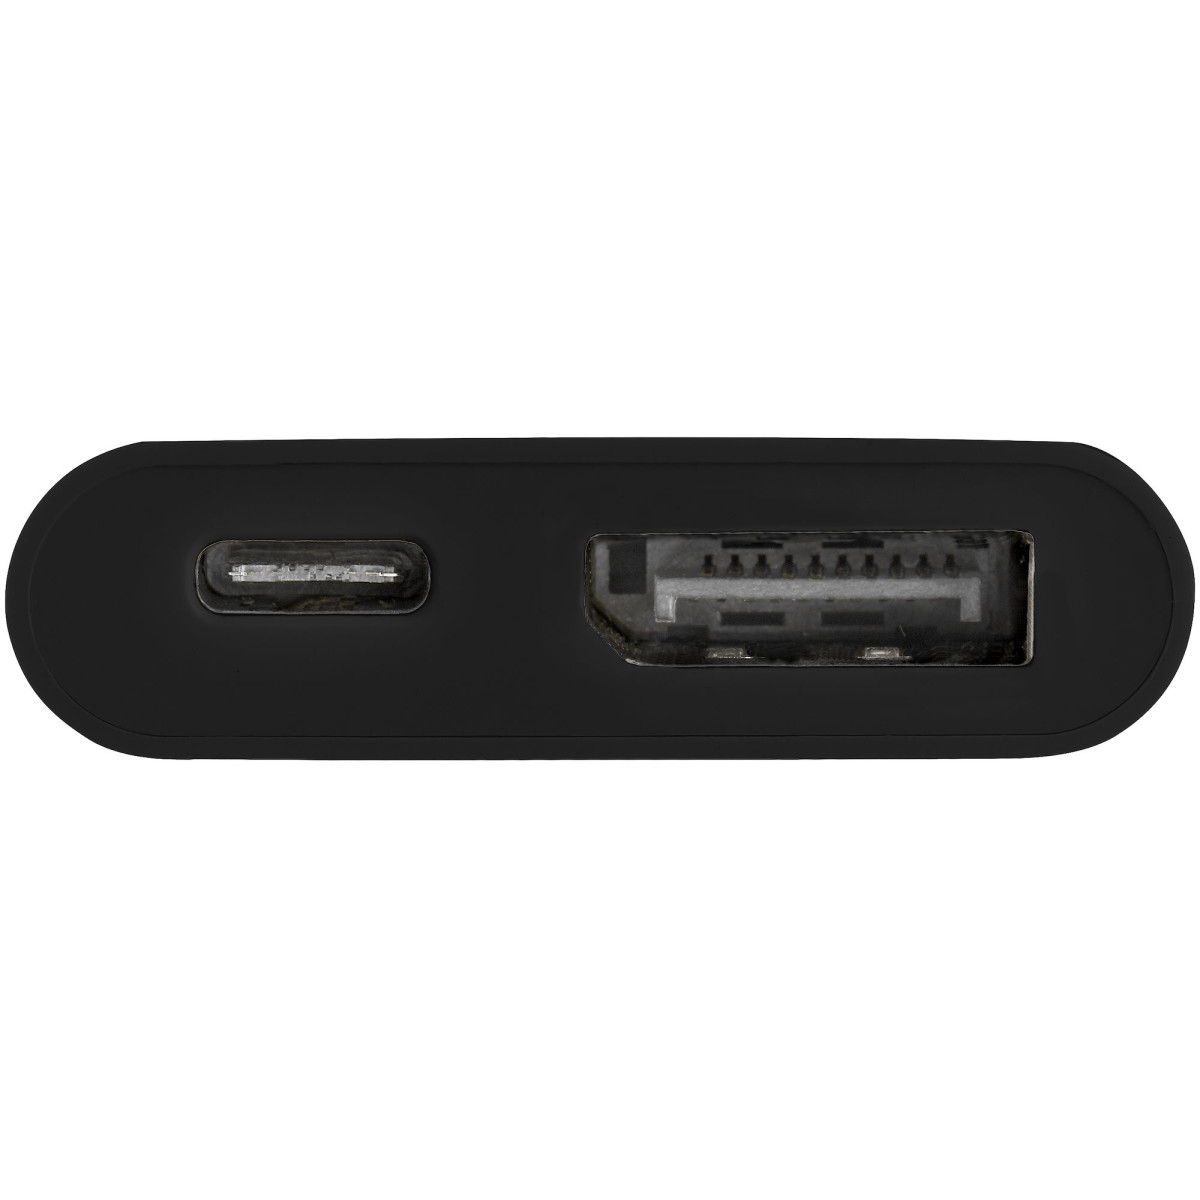 Adapter - USB C to DisplayPort - 60W PD